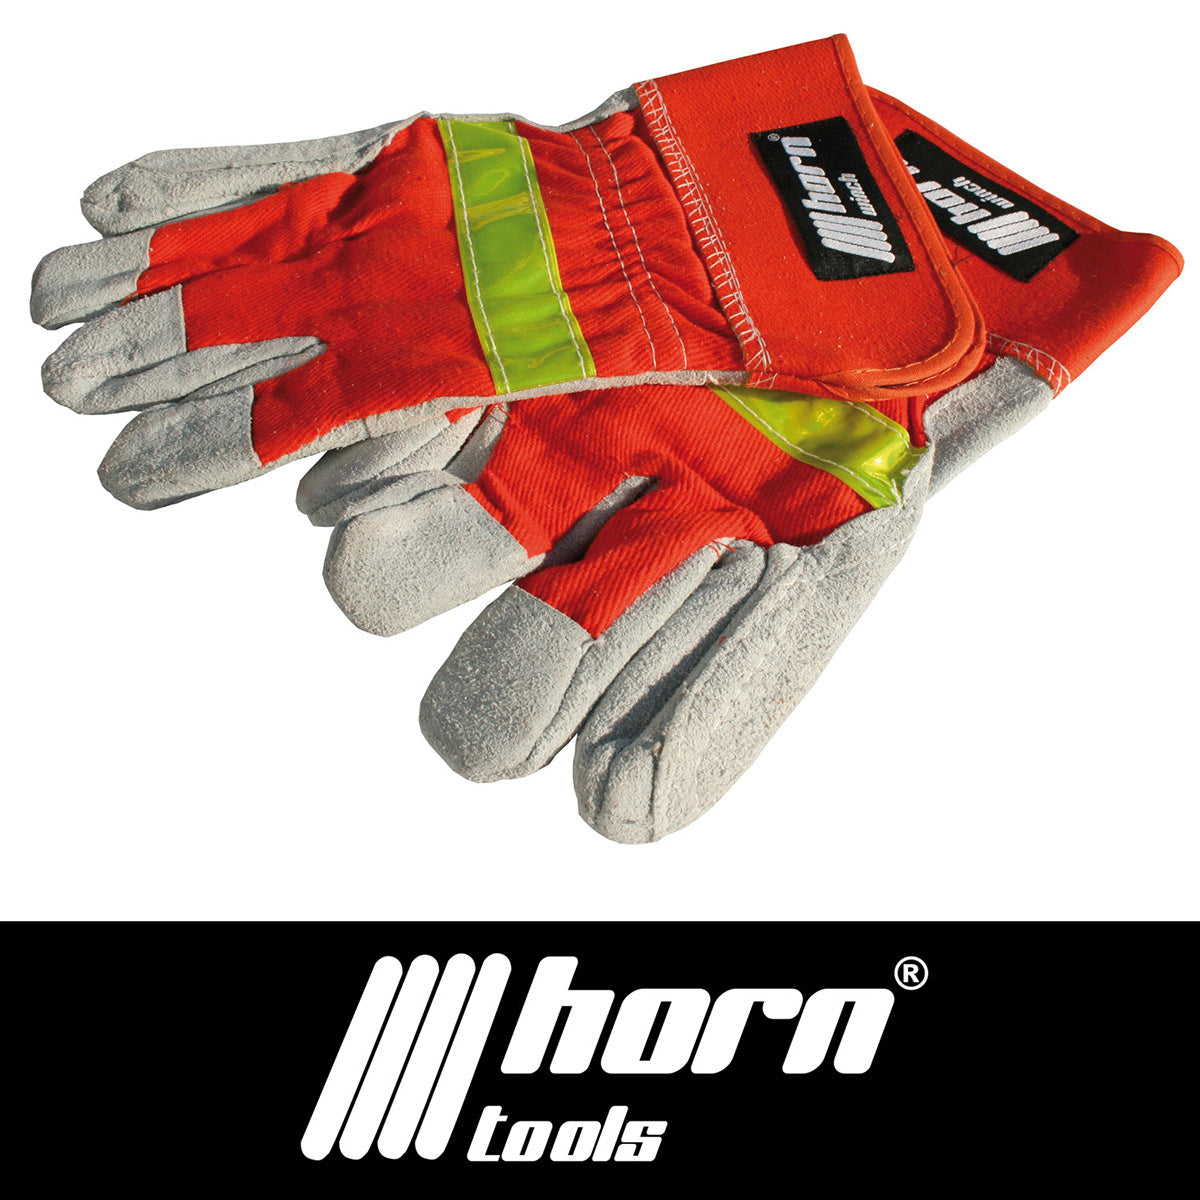 Horntools gloves